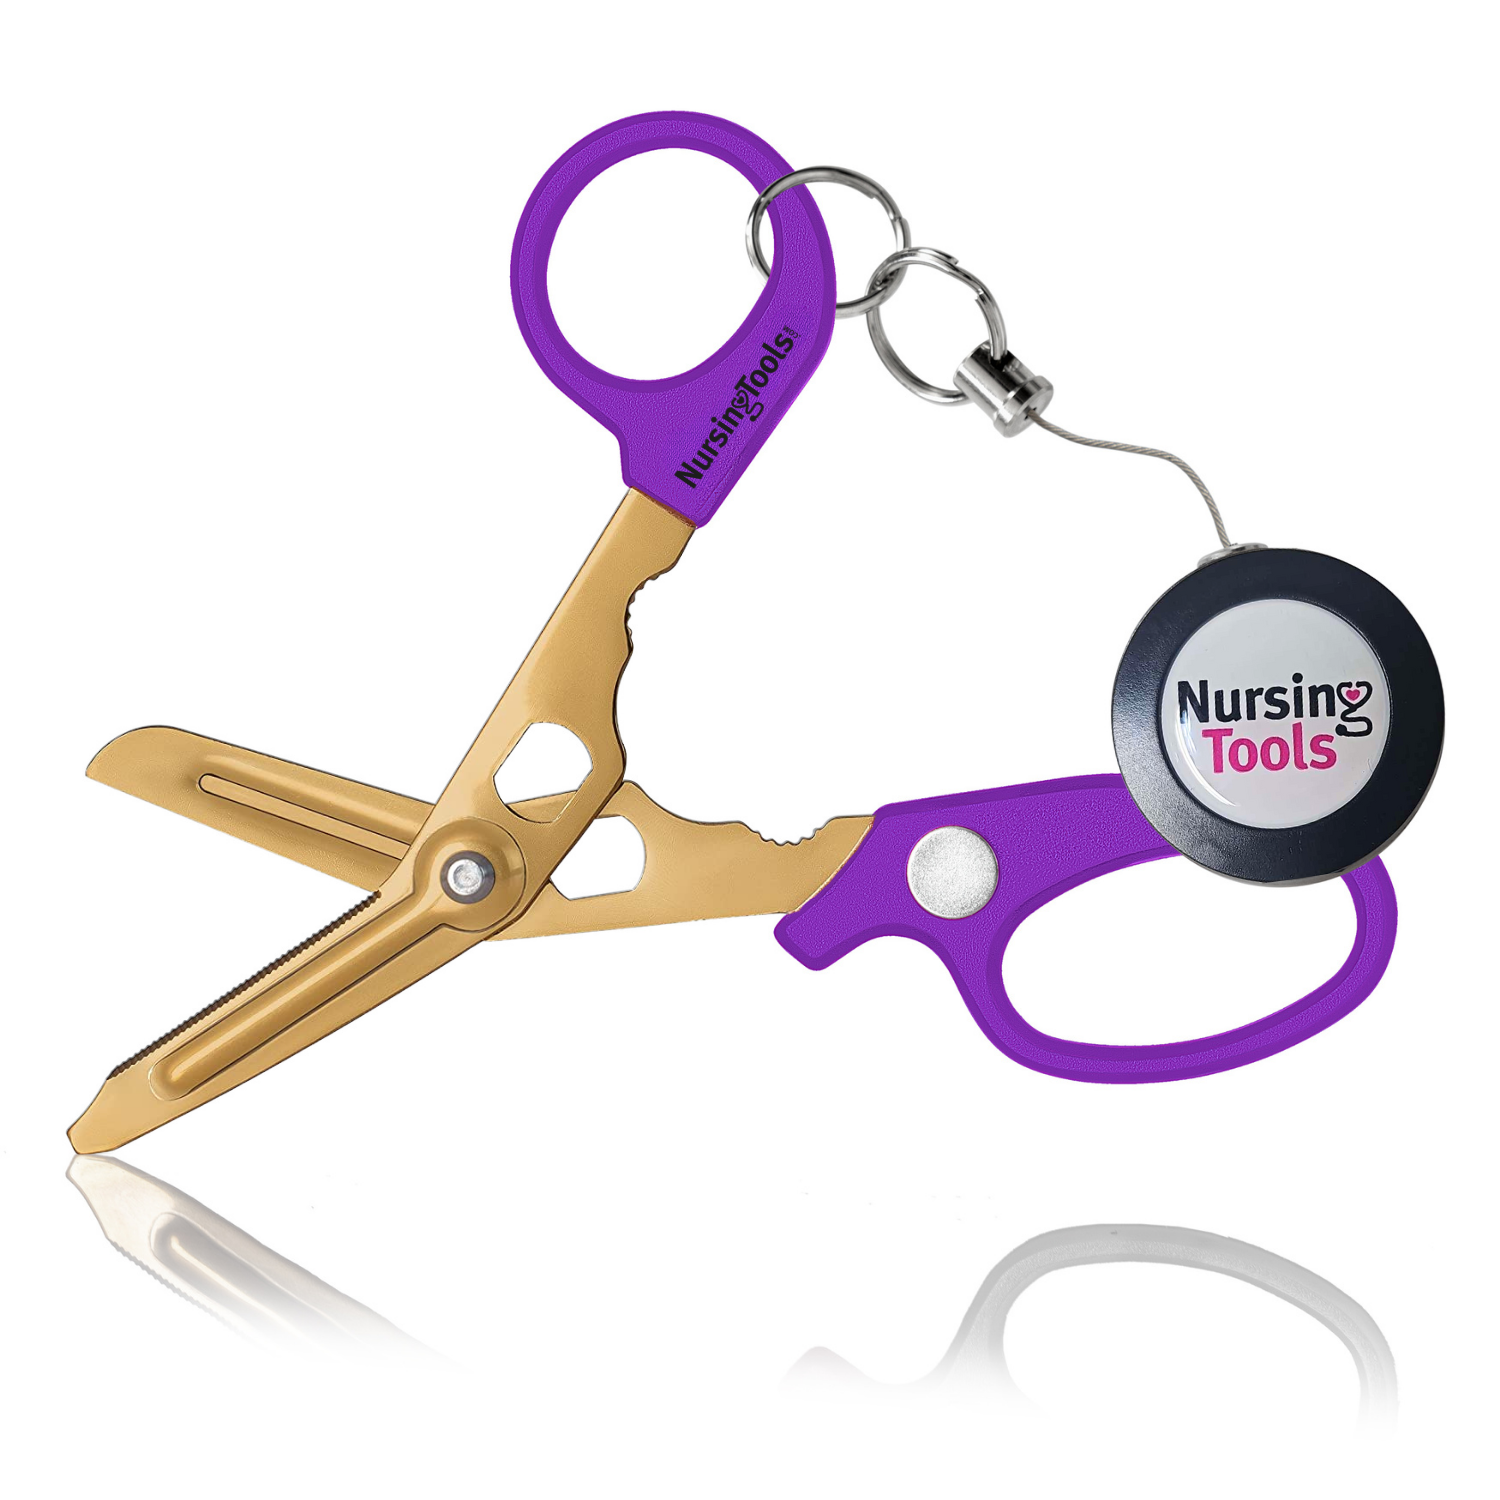 Hummingbird 4 in 1 Medical Scissors with Premium Badge Reel – Nursingtools